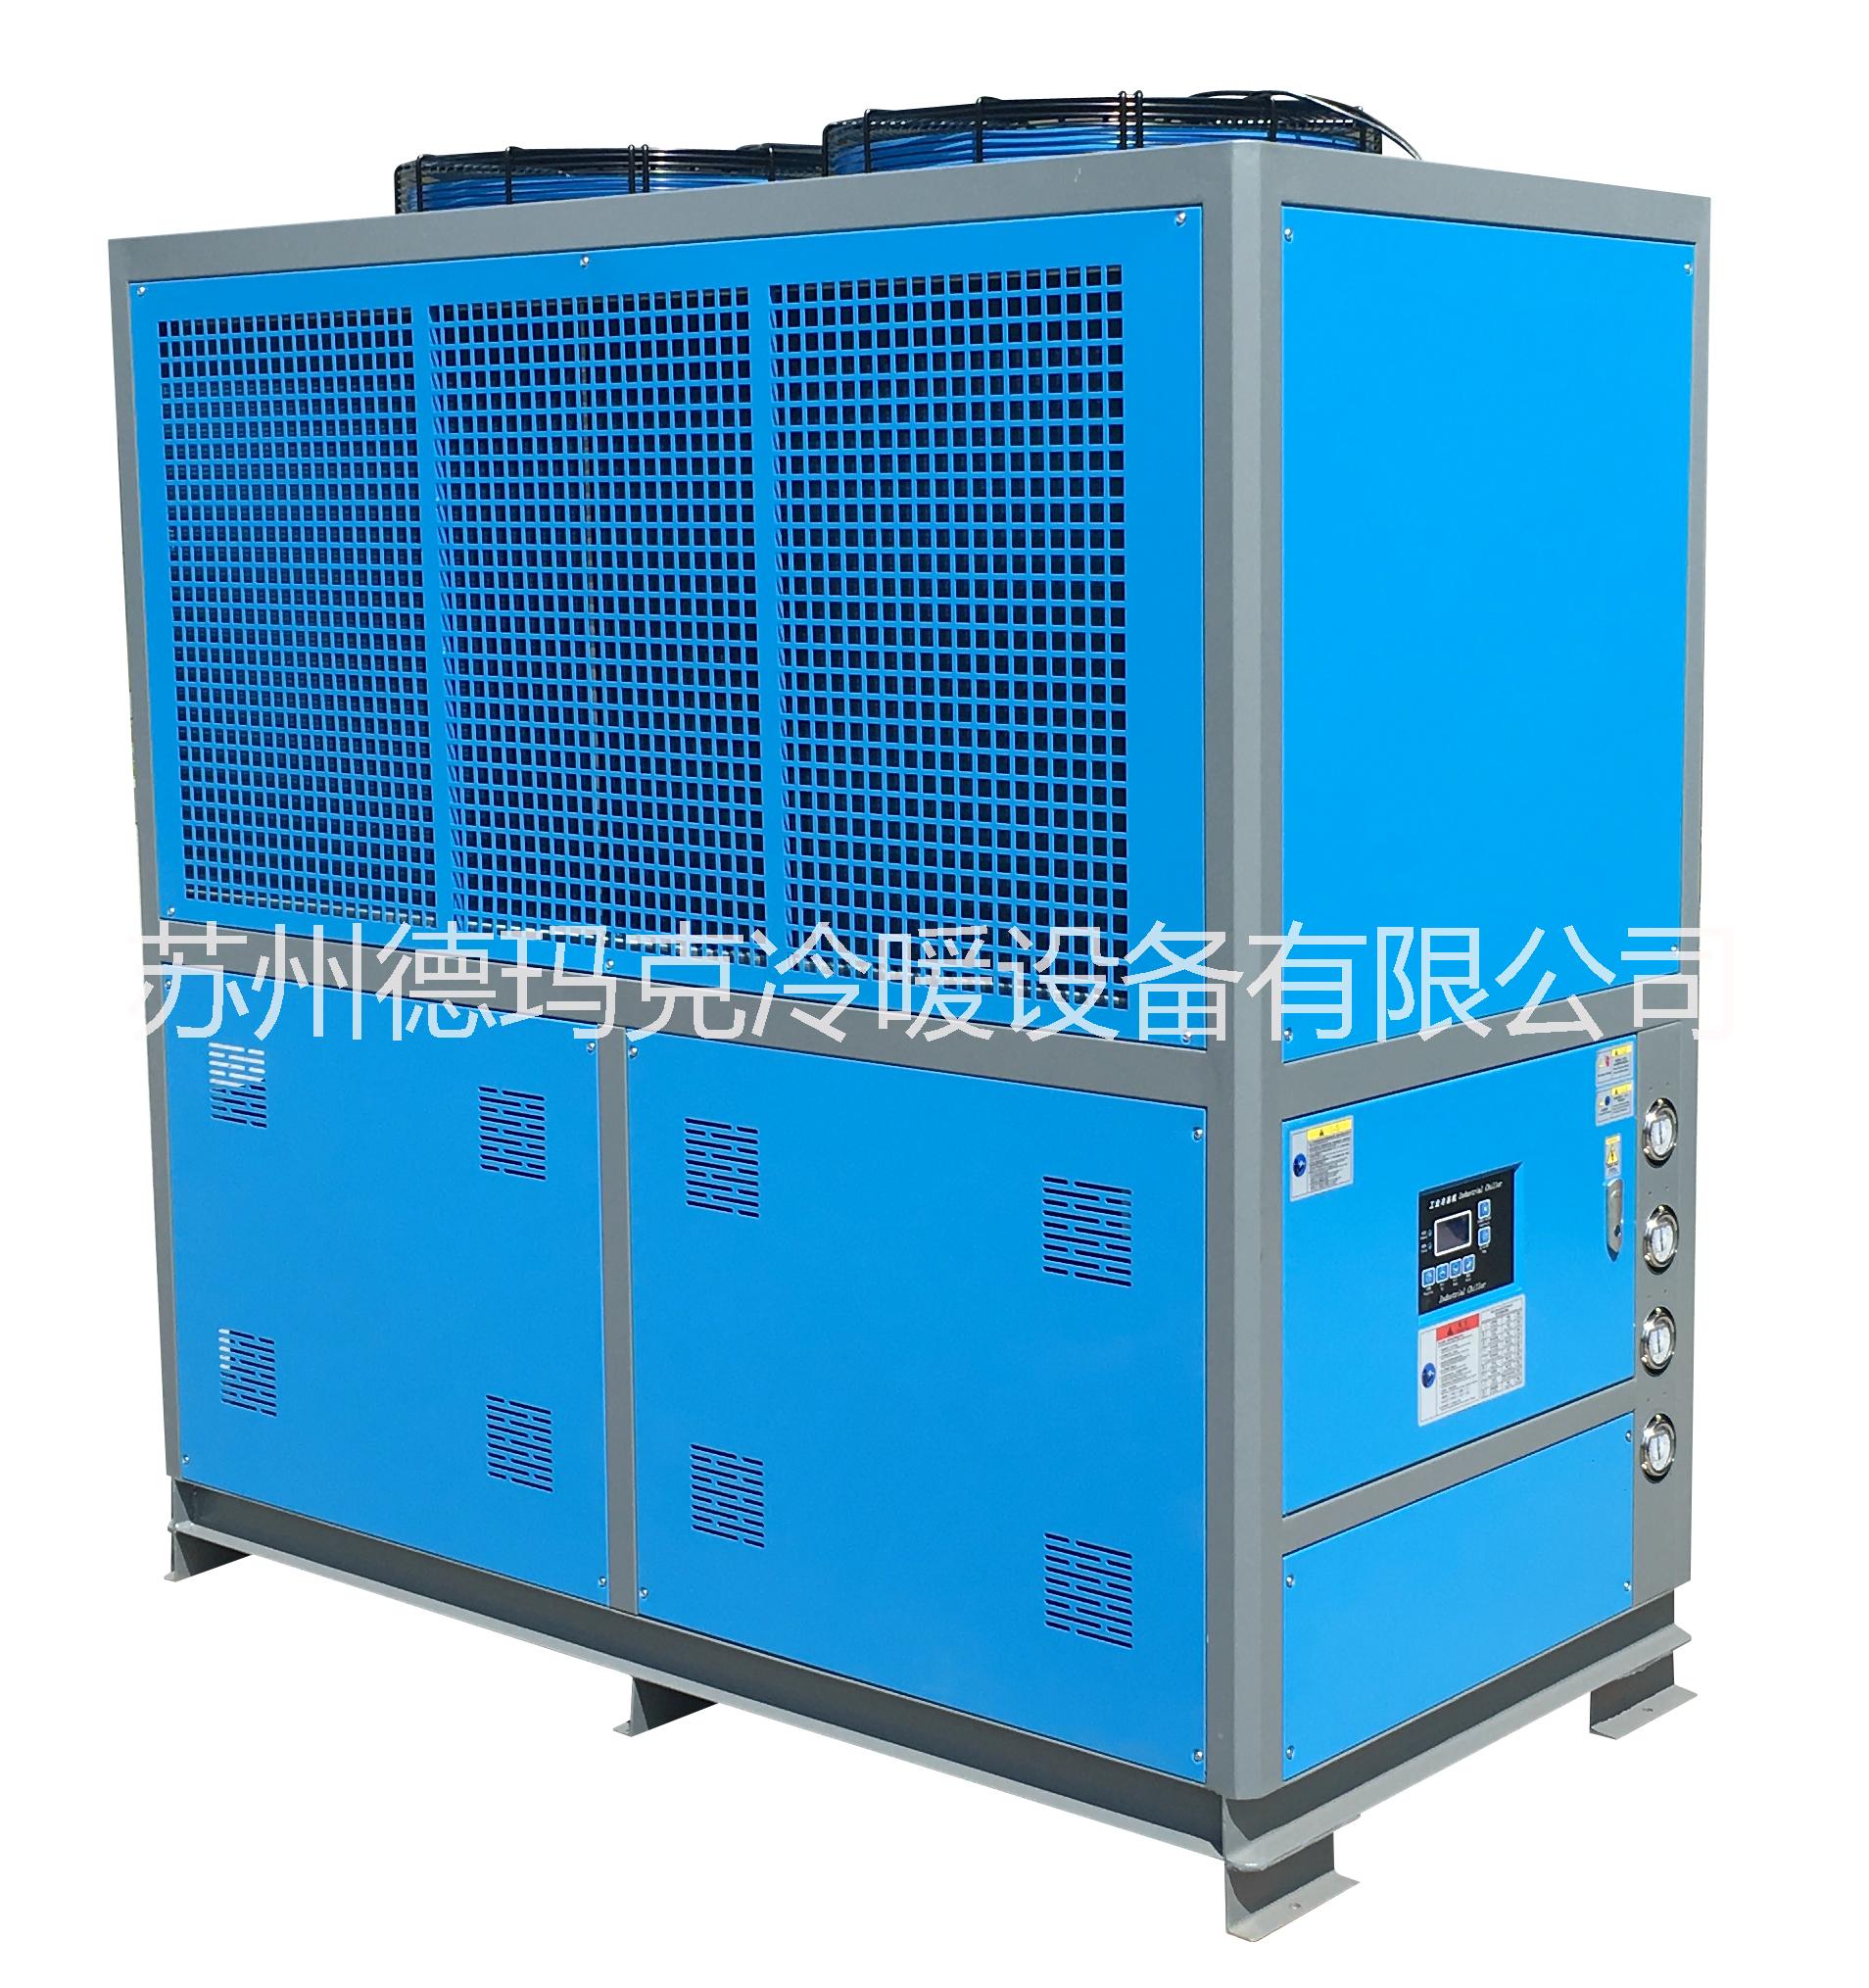 高效节能风冷式冰水机 优质环保风冷式冷热一体机 新能源驱动器测试冰水机 低温测试机